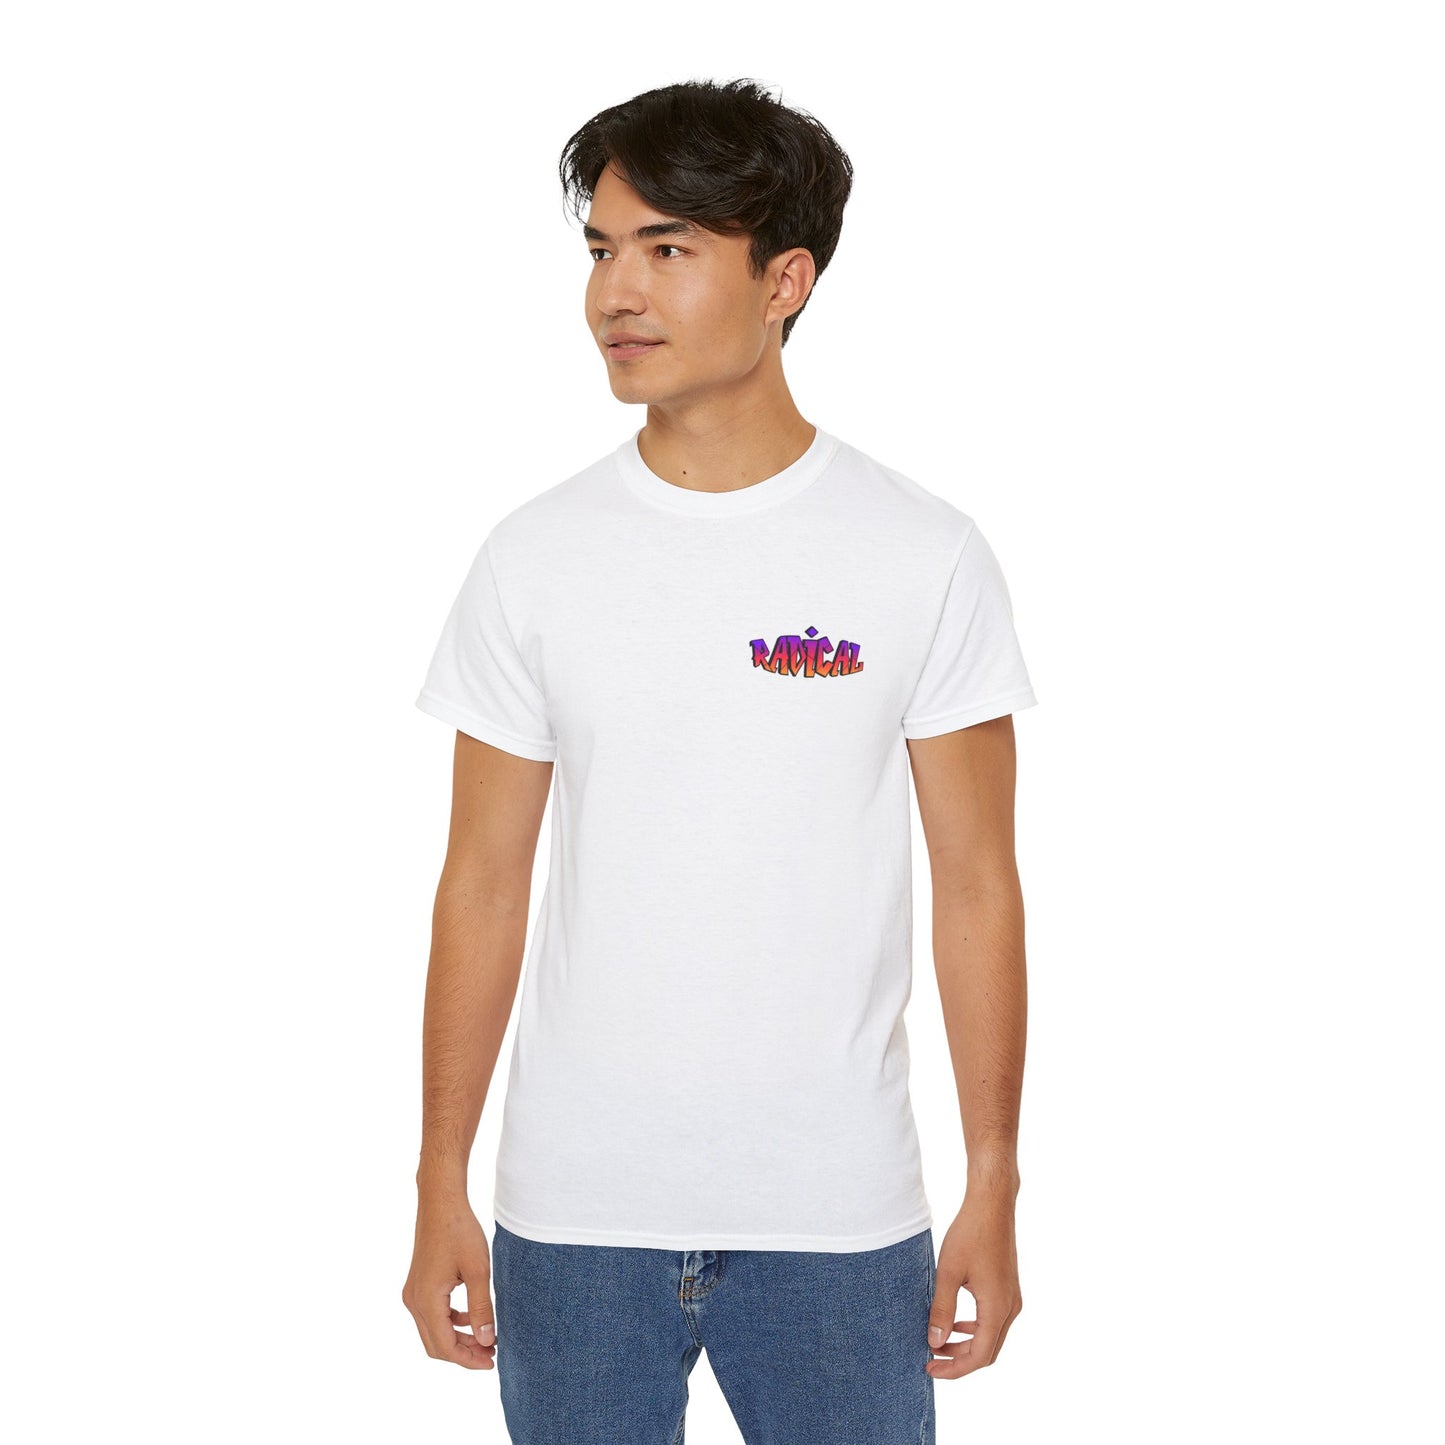 Unisex Ultra Cotton (Radical) T-shirt